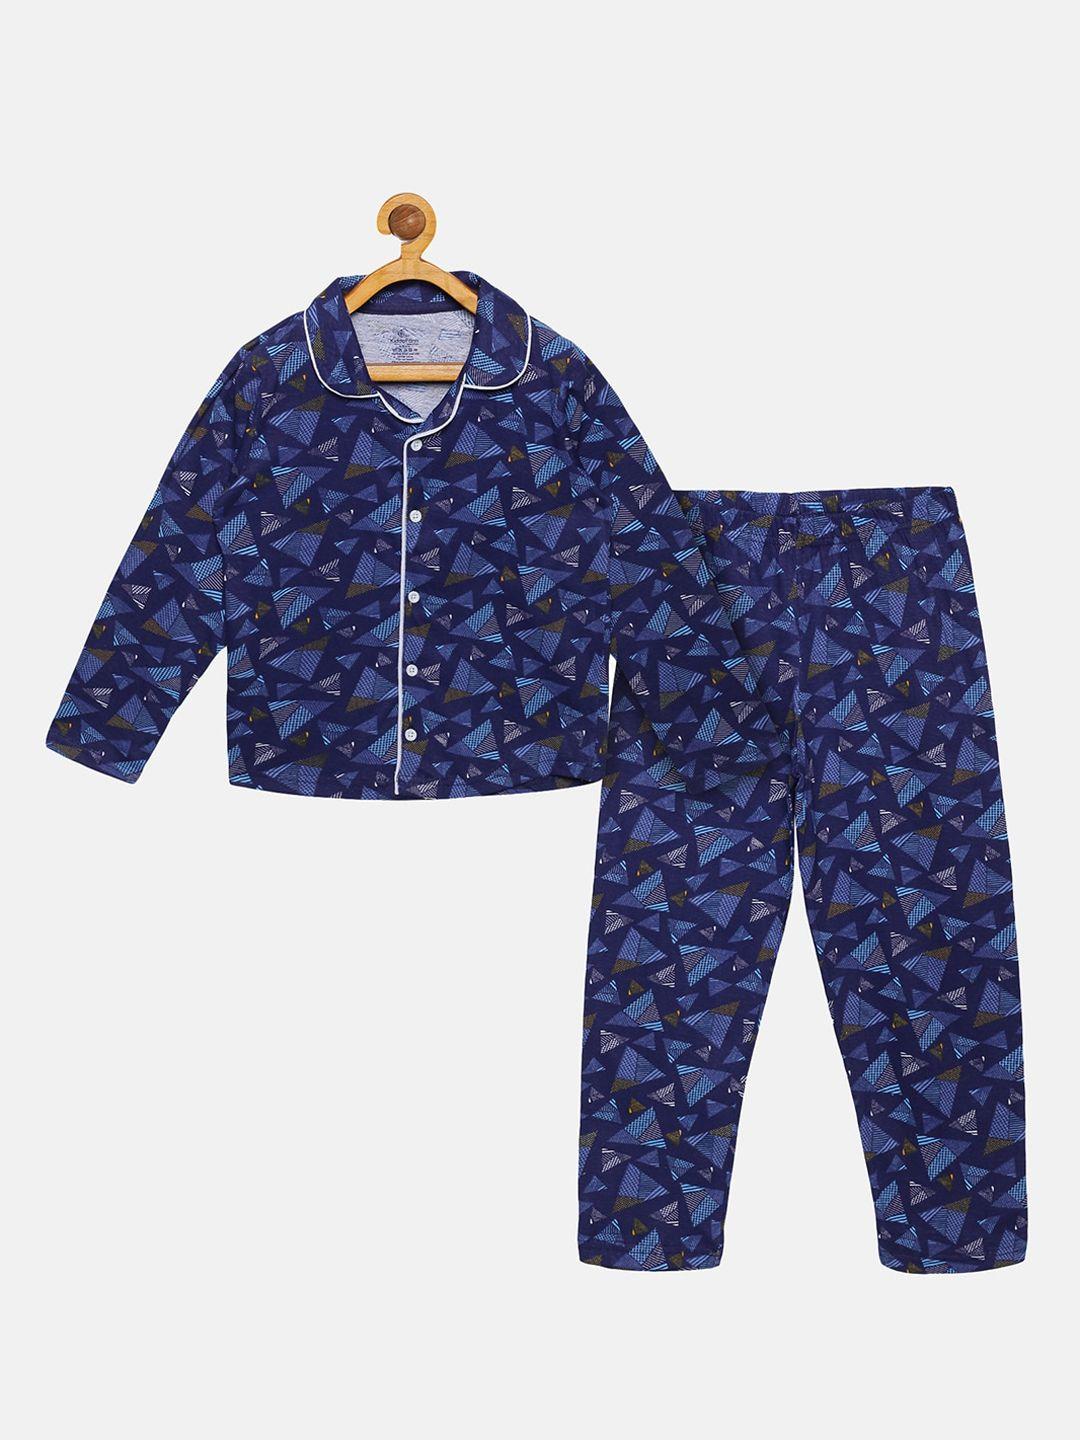 kiddopanti boys navy blue printed night suit